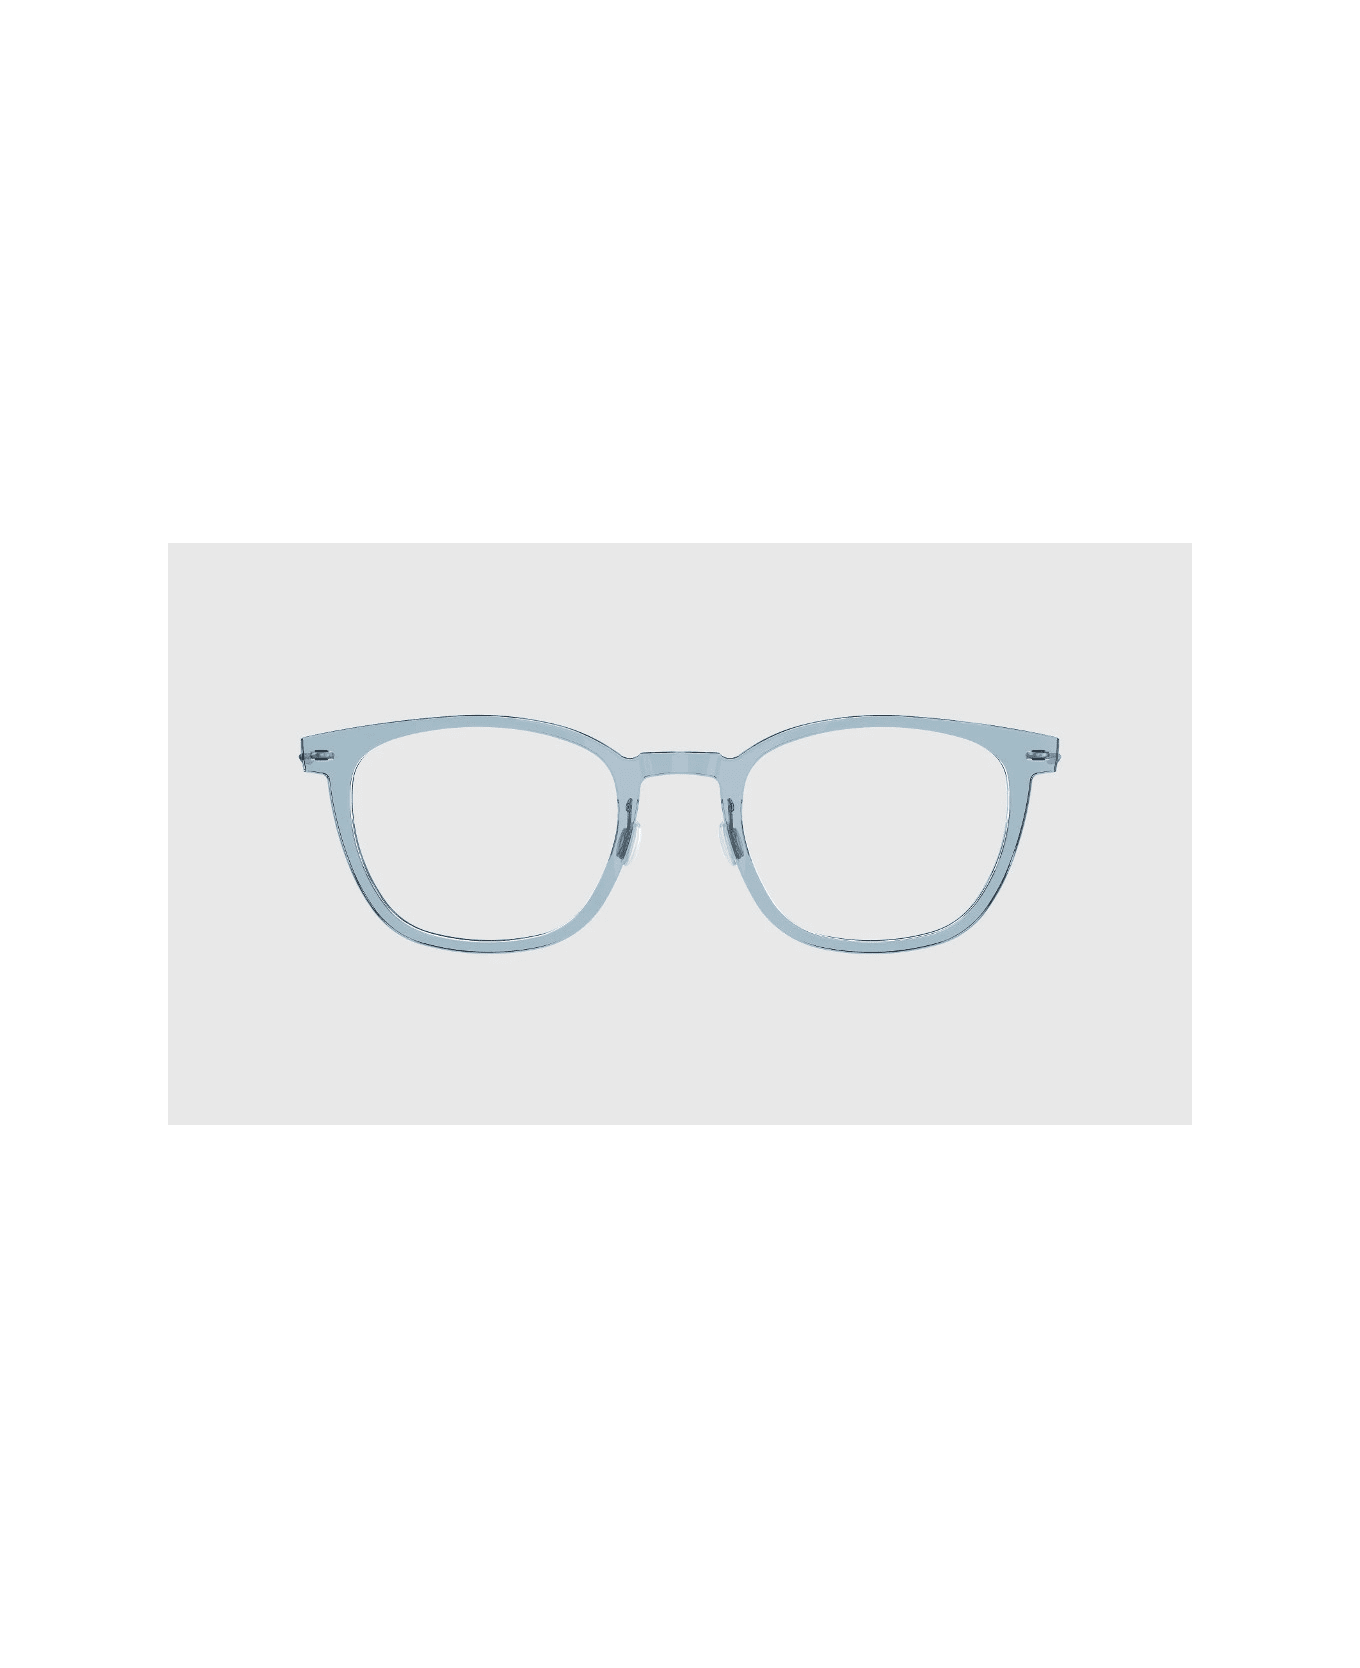 LINDBERG Now 6609 C08 Glasses アイウェア